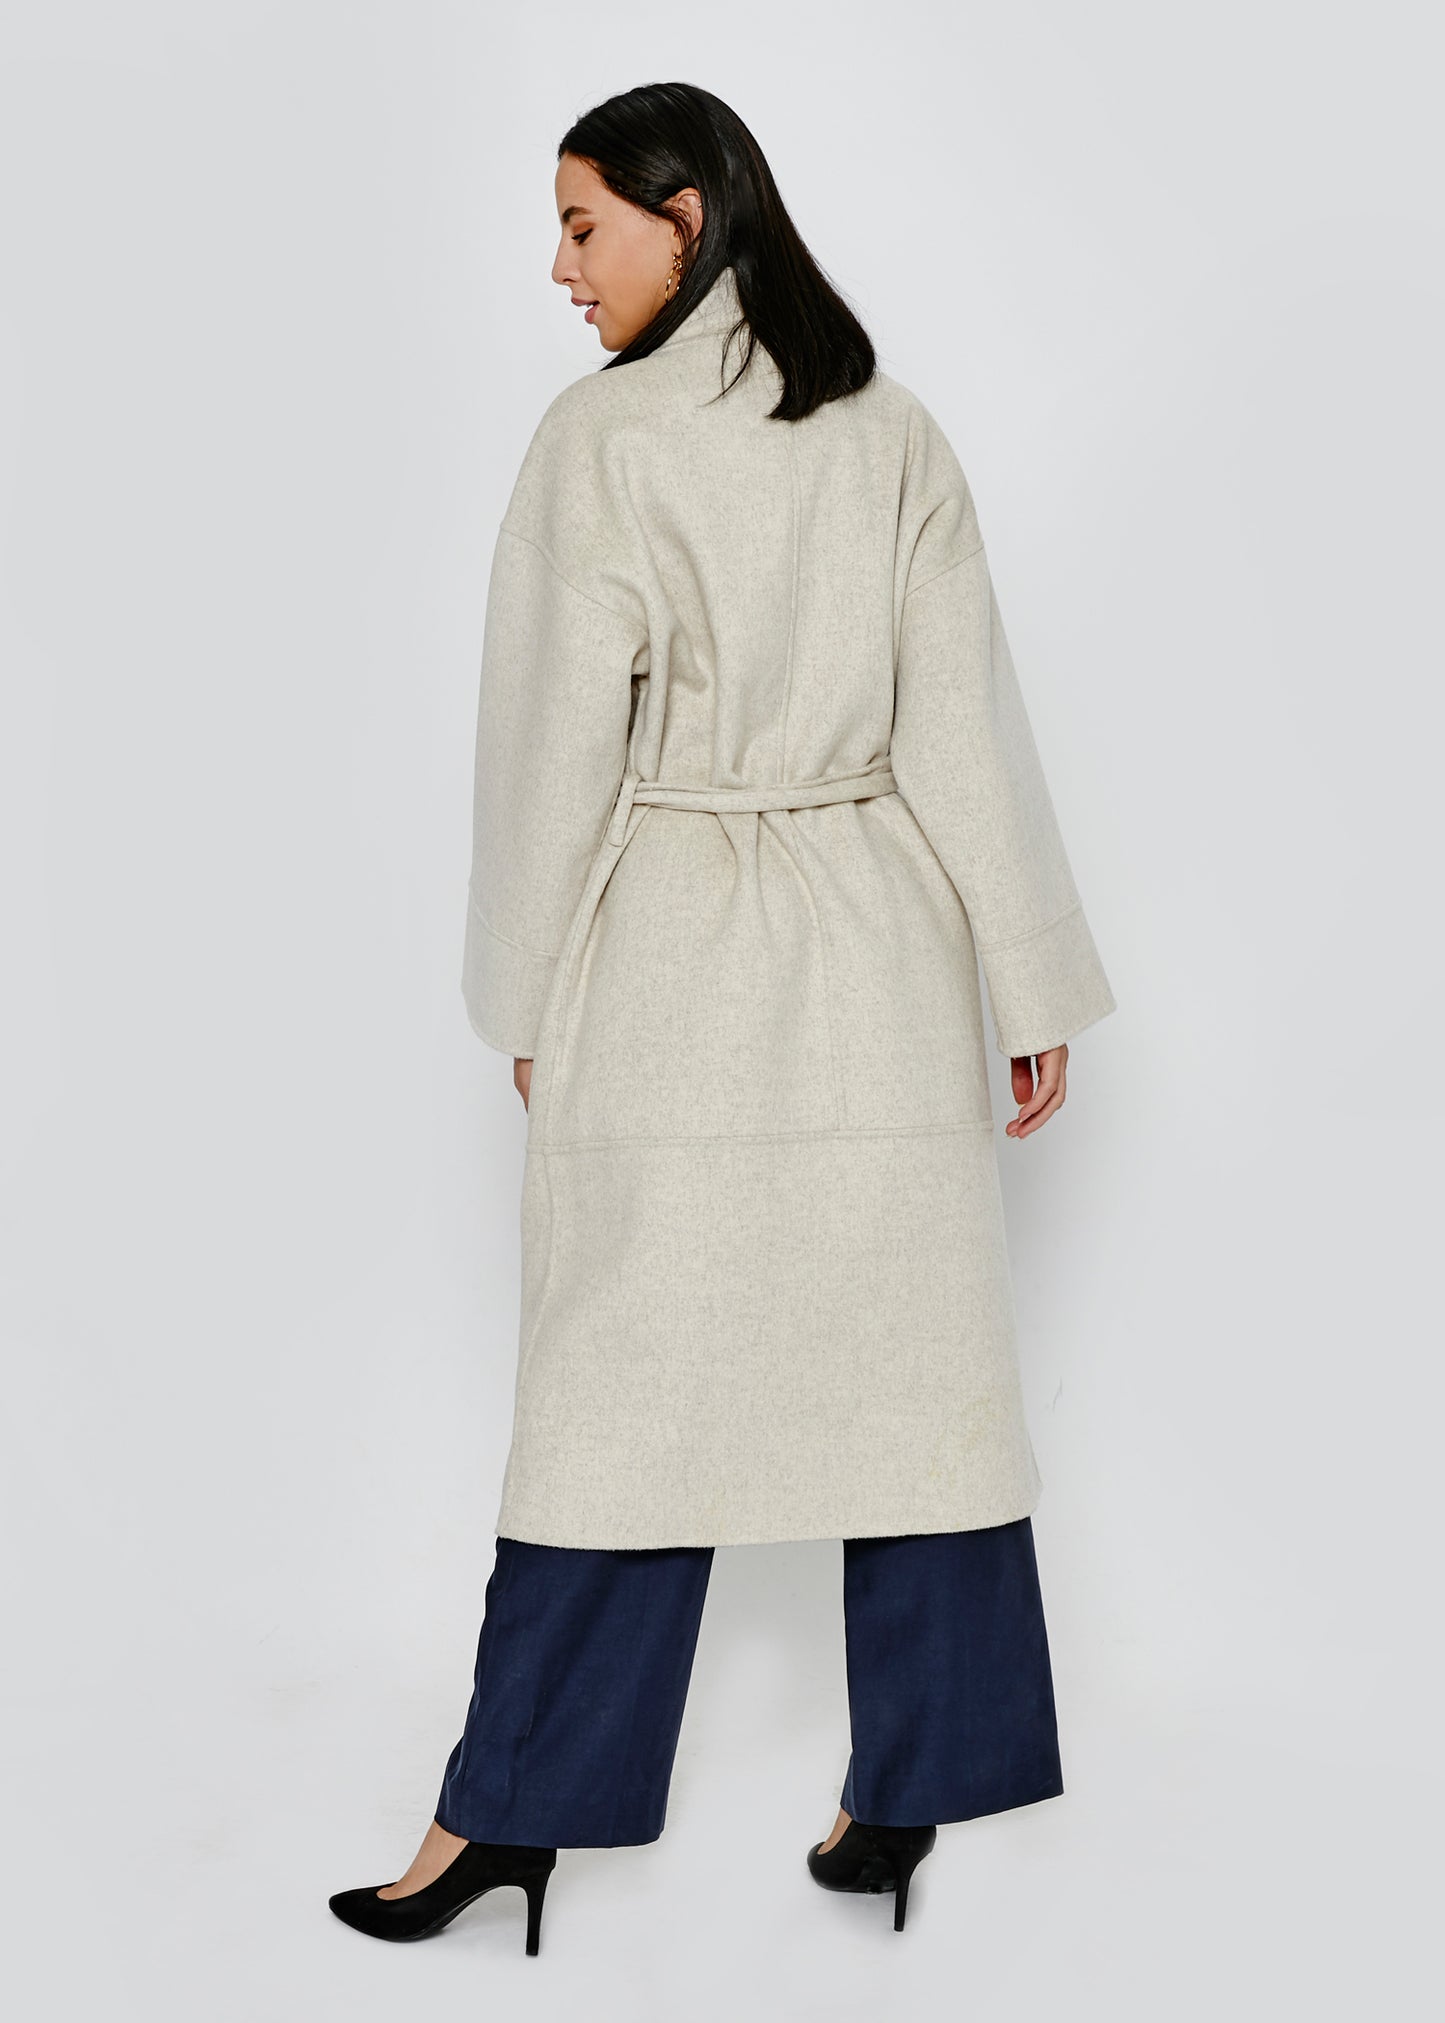 
                  
                    Kiyo Coat
                  
                